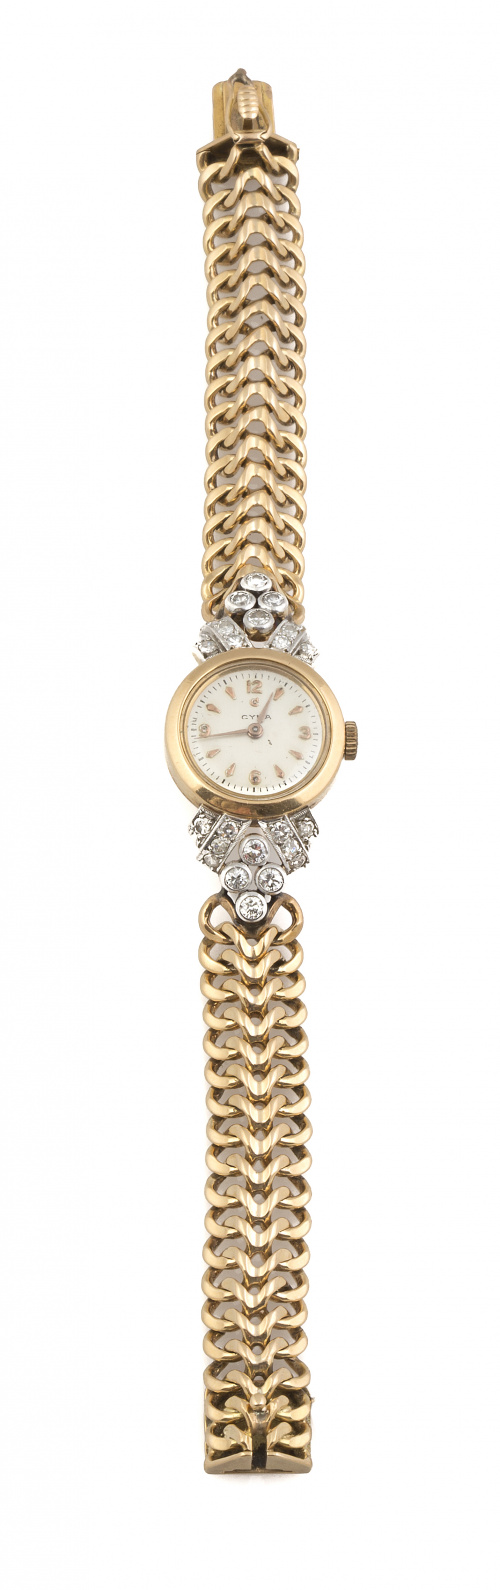 Reloj-Joya CYMA años 40 con brazalete en oro de 18K y brill